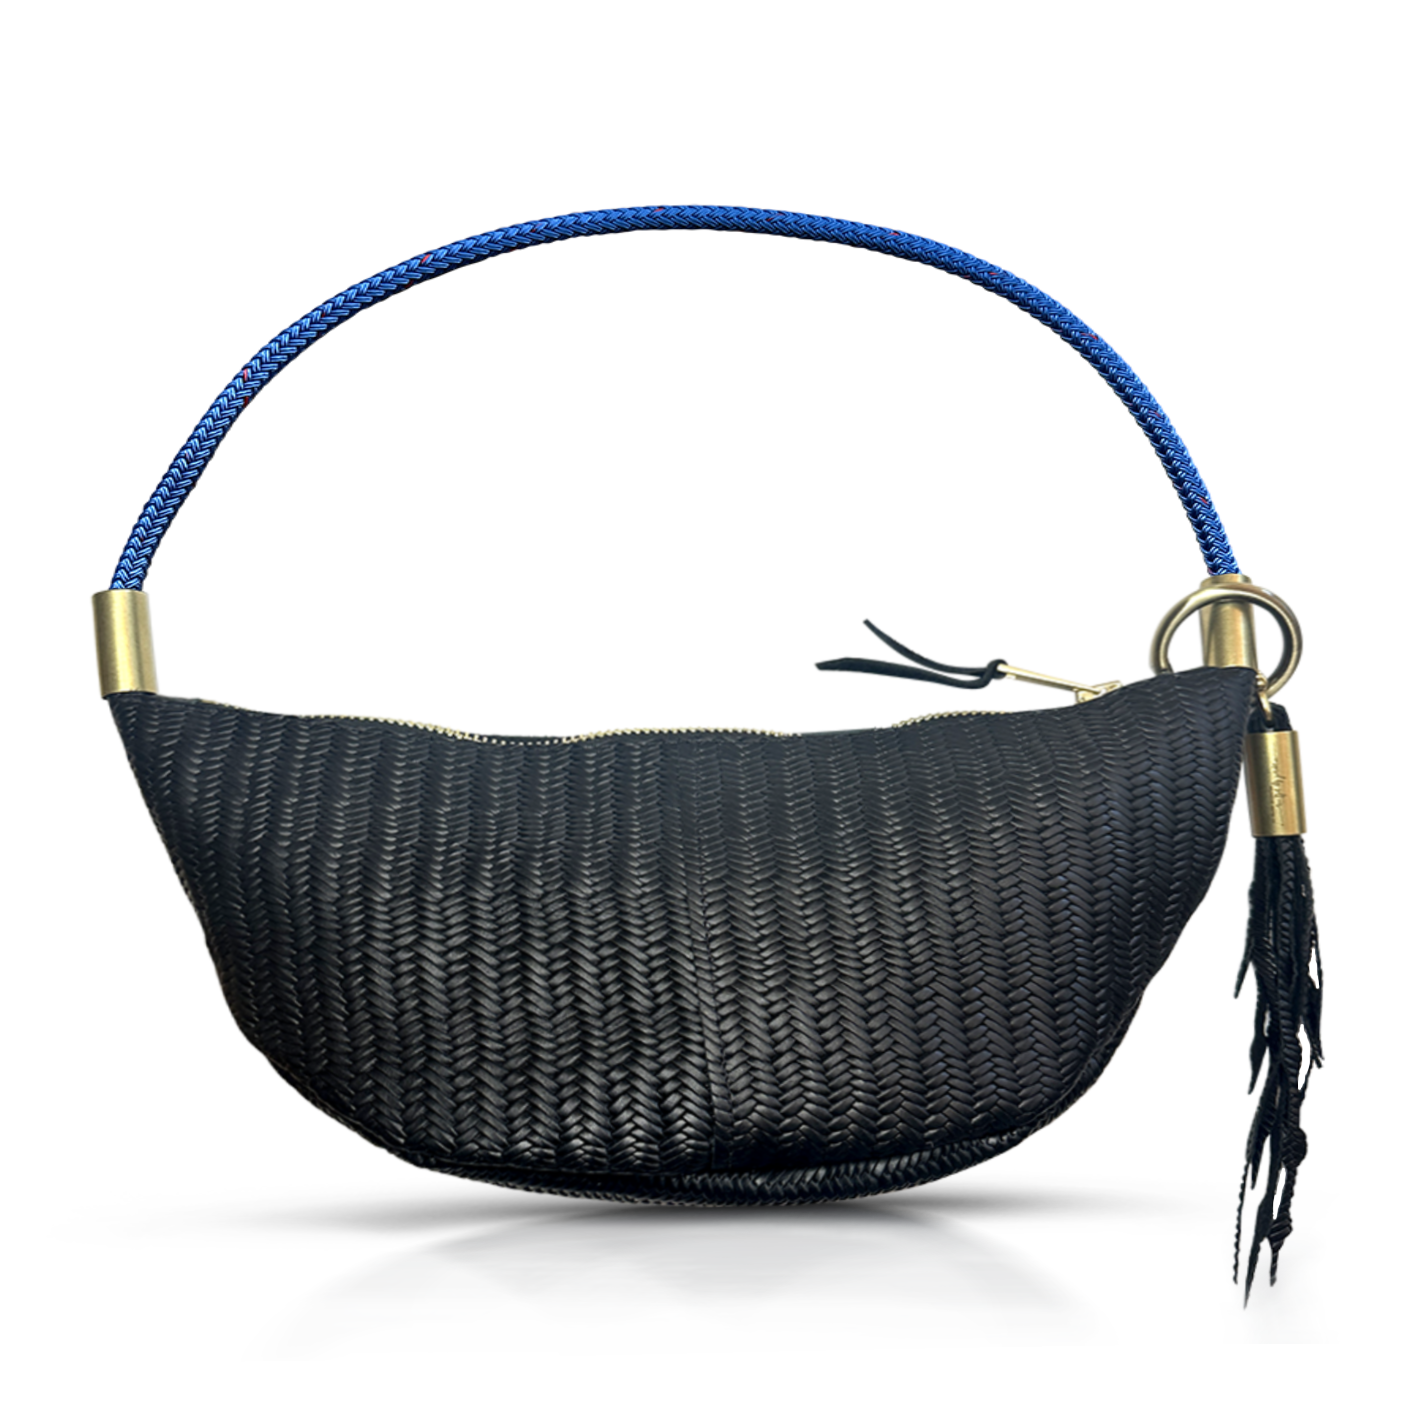 black basketweave leather sling bag with harborside blue dock line handle